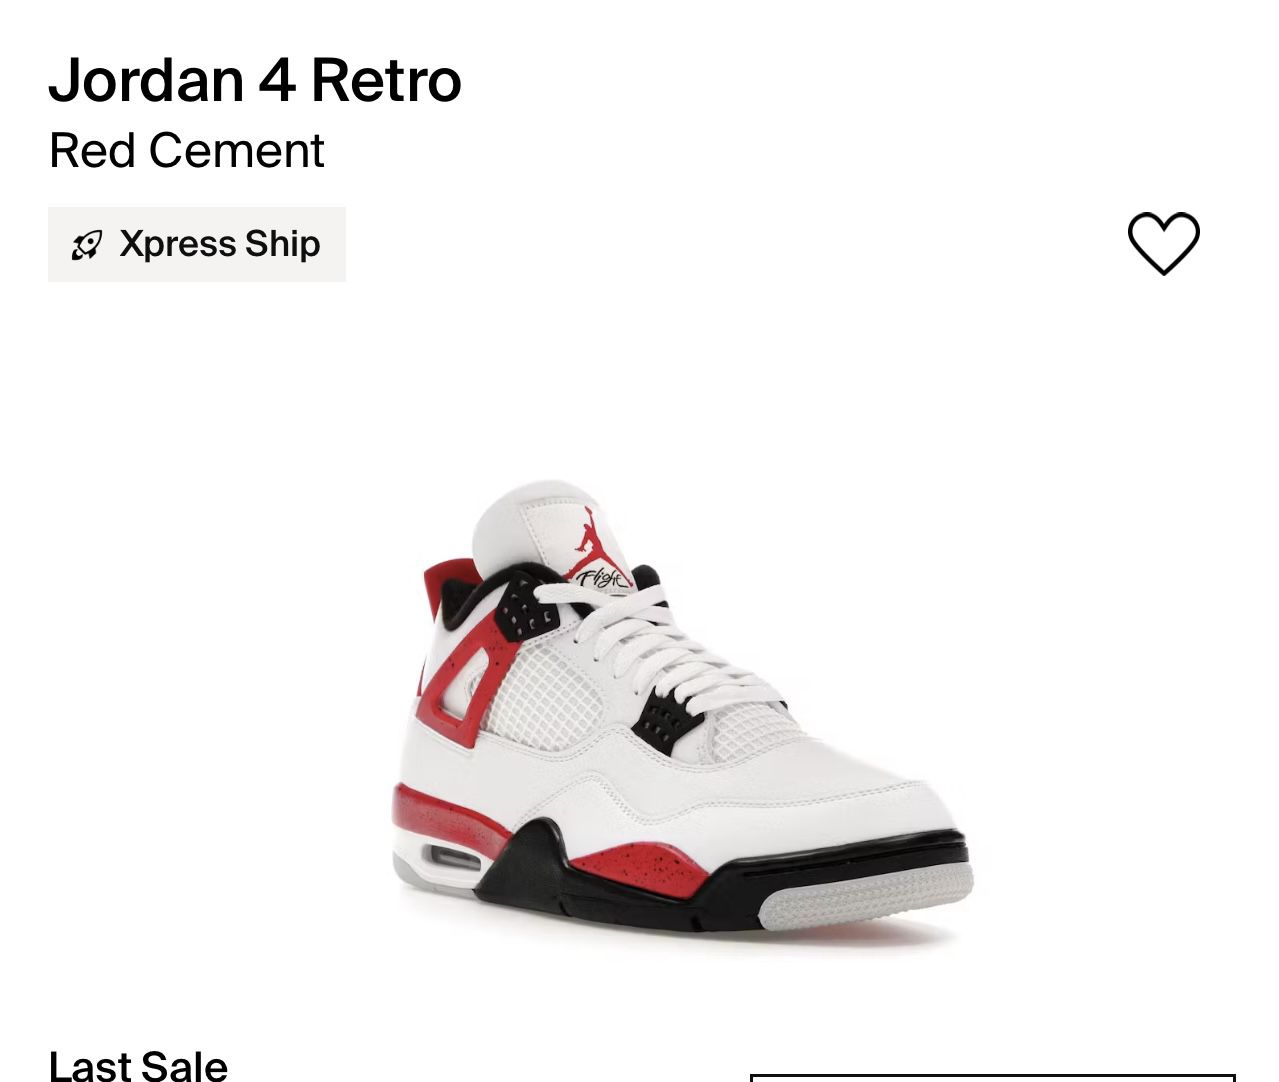 Jordan 4’s